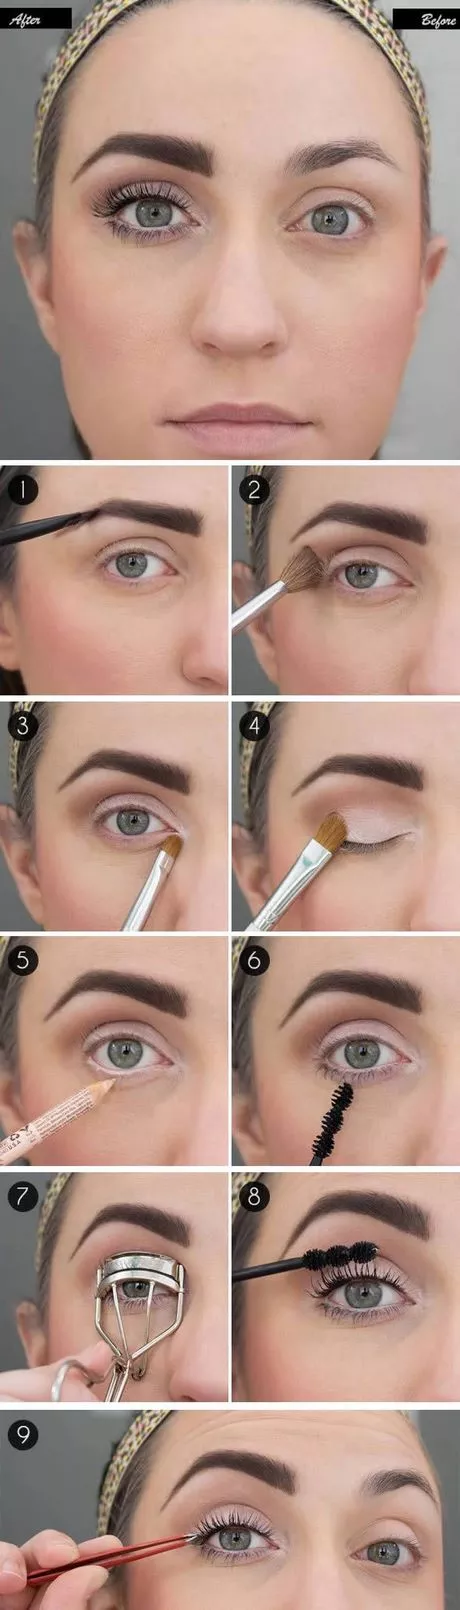 how-make-eye-makeup-60-1 Hoe make eye makeup